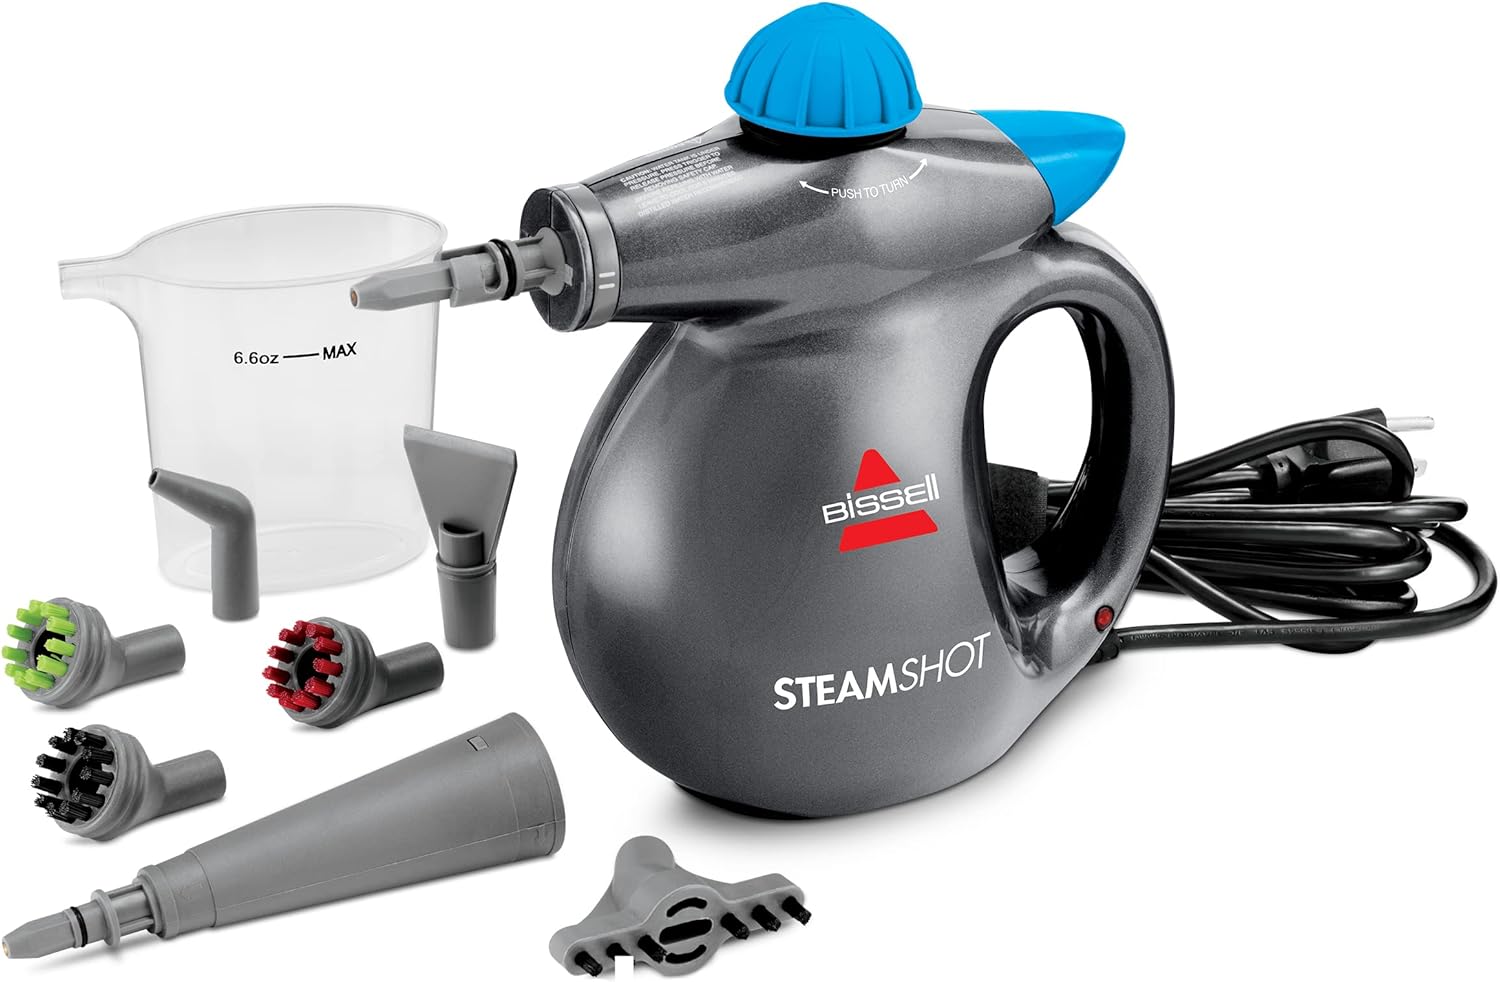 Bissell SteamShot Hard Surface Steam Cleaner with Natural Sanitization, 39N7V